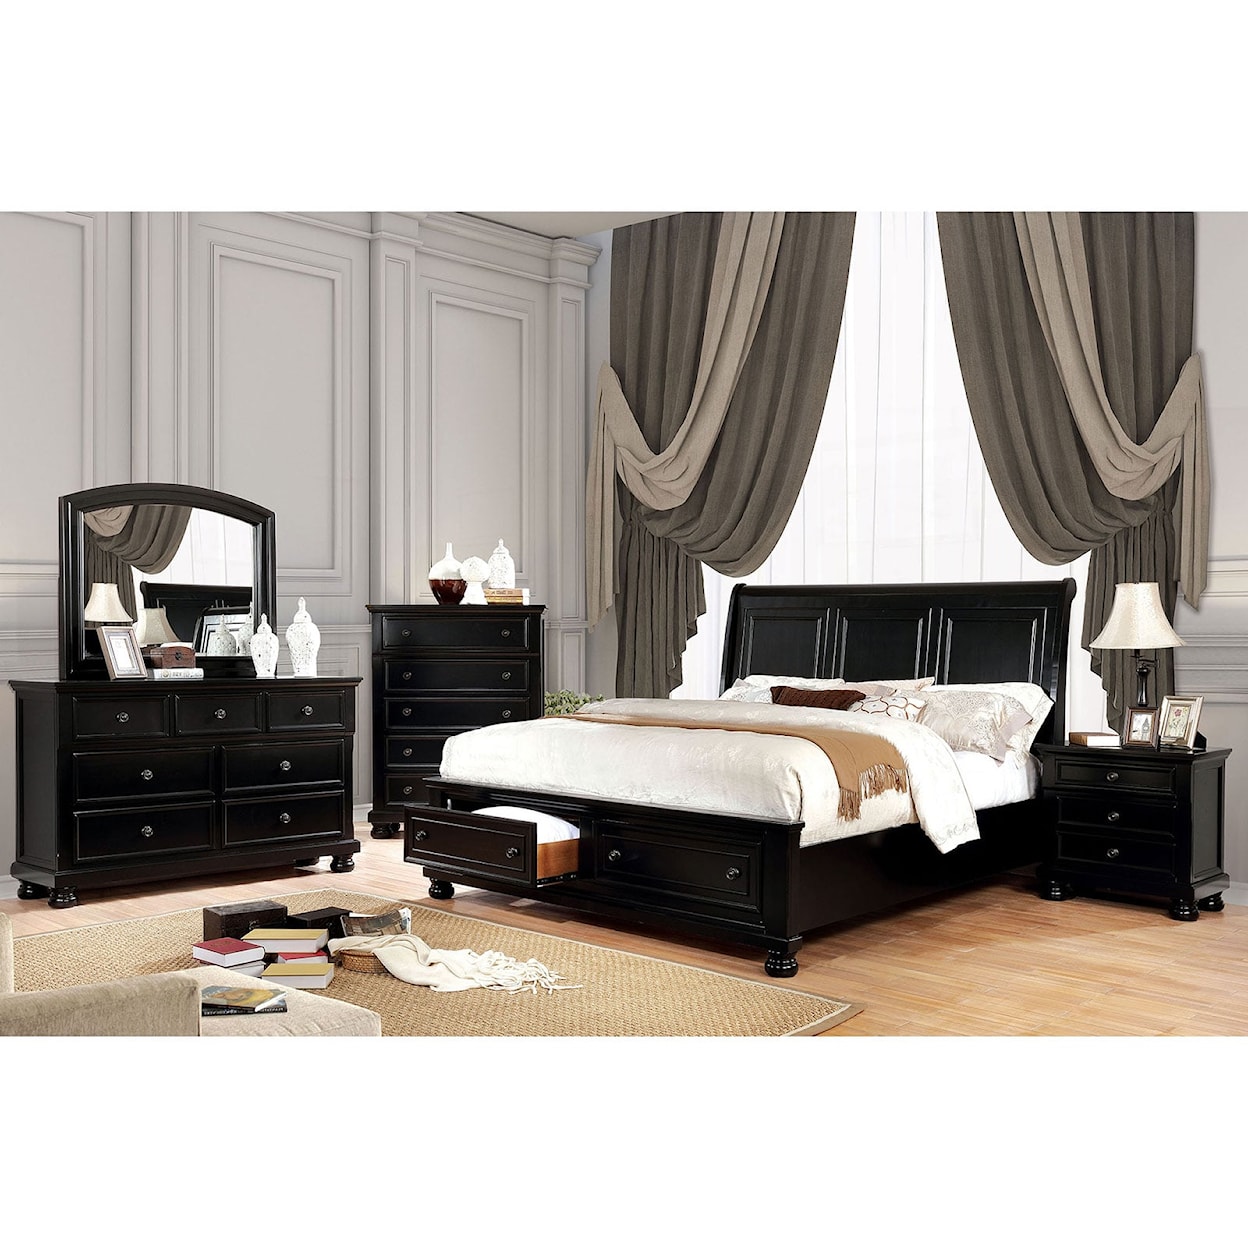 Furniture of America - FOA Castor 4 Pc. Queen Bedroom Set